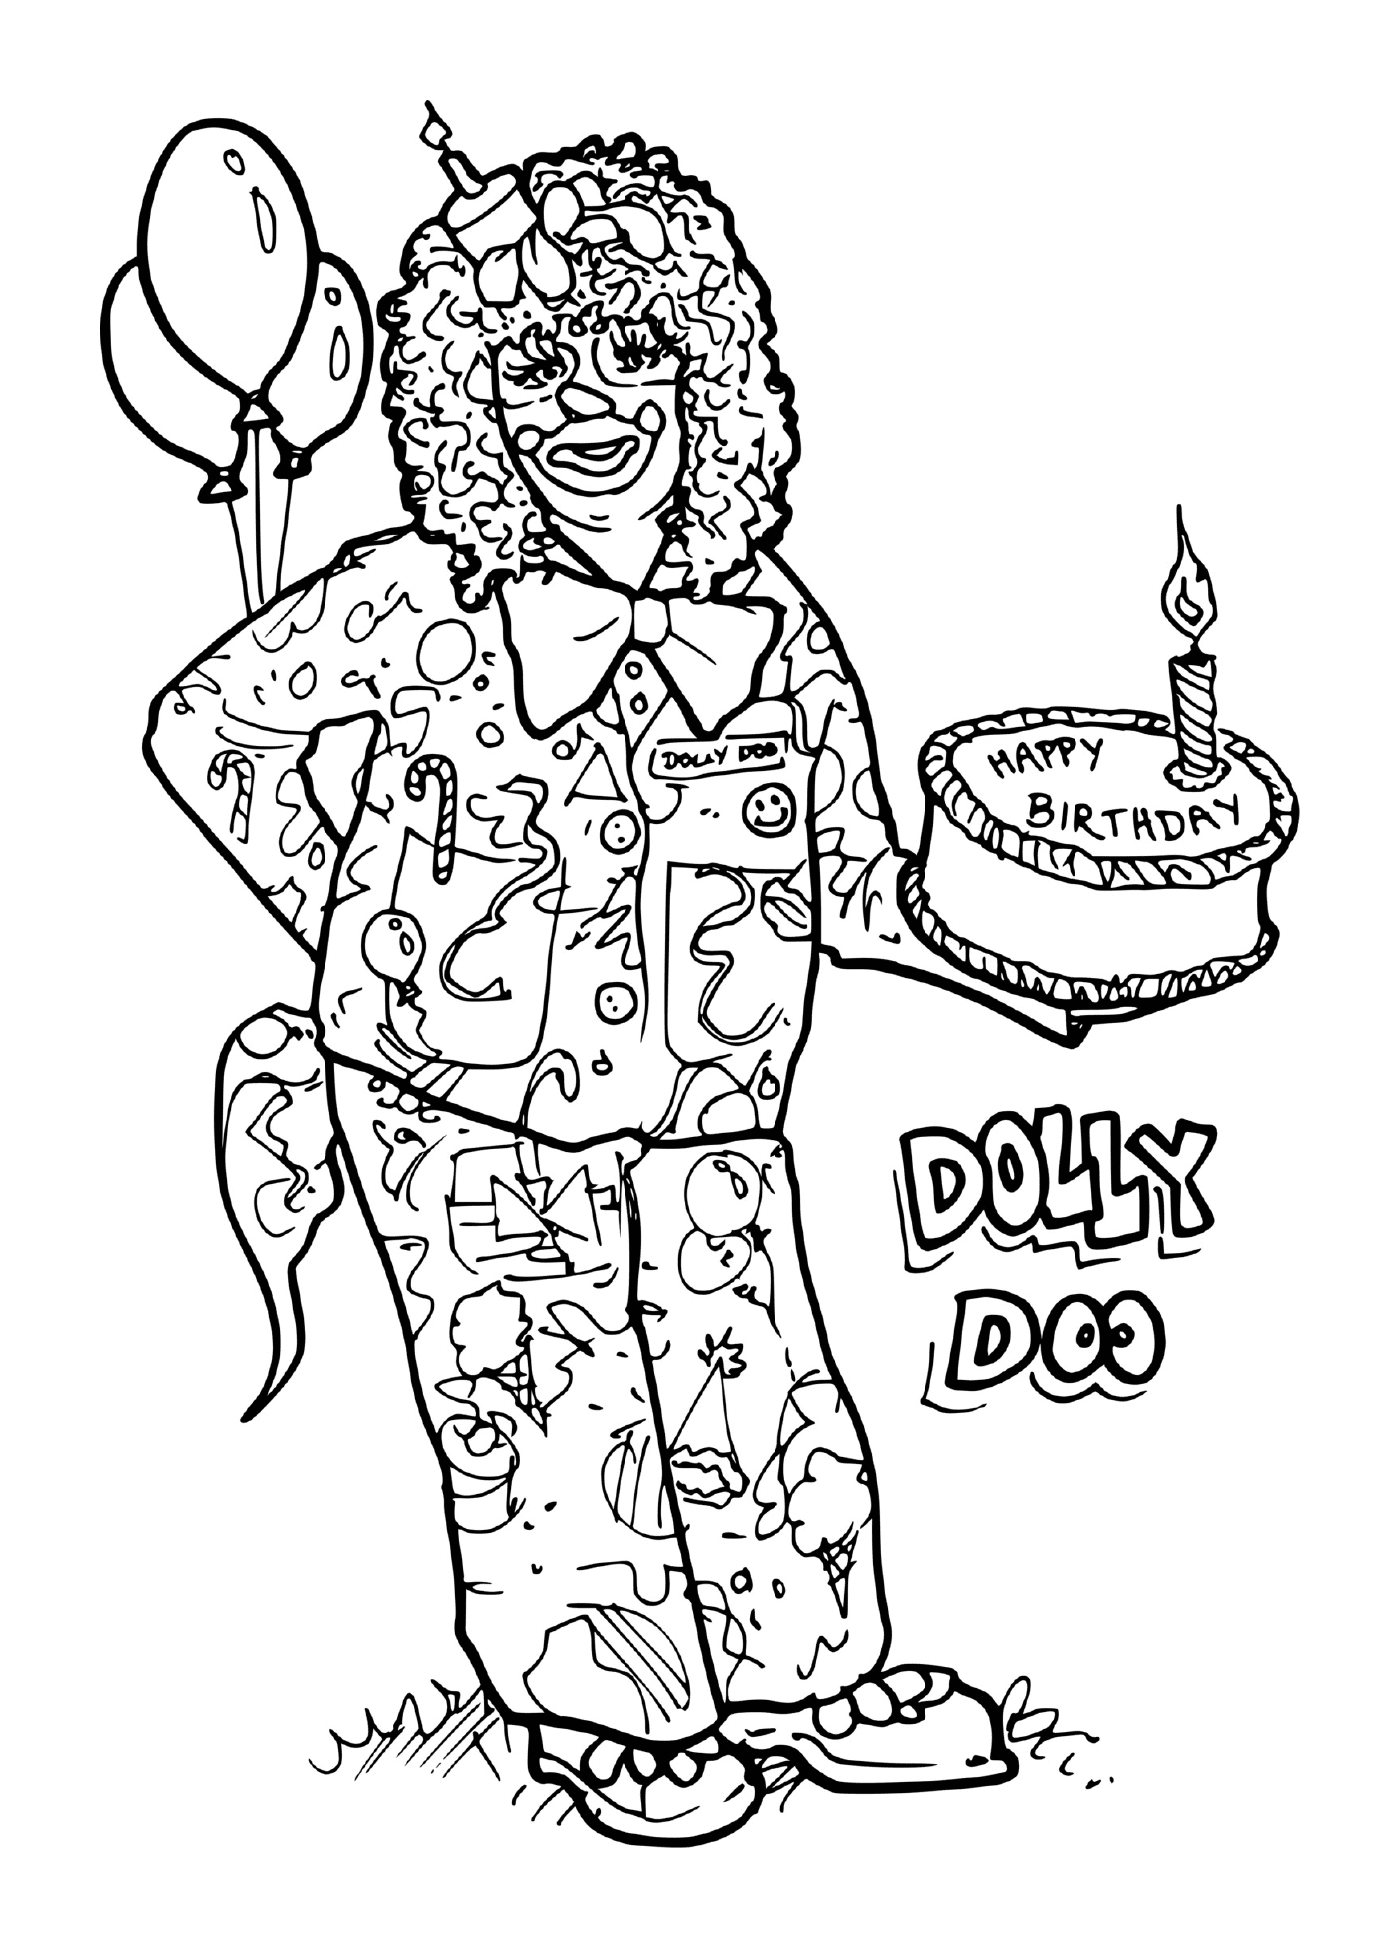  一个带生日蛋糕的小丑 